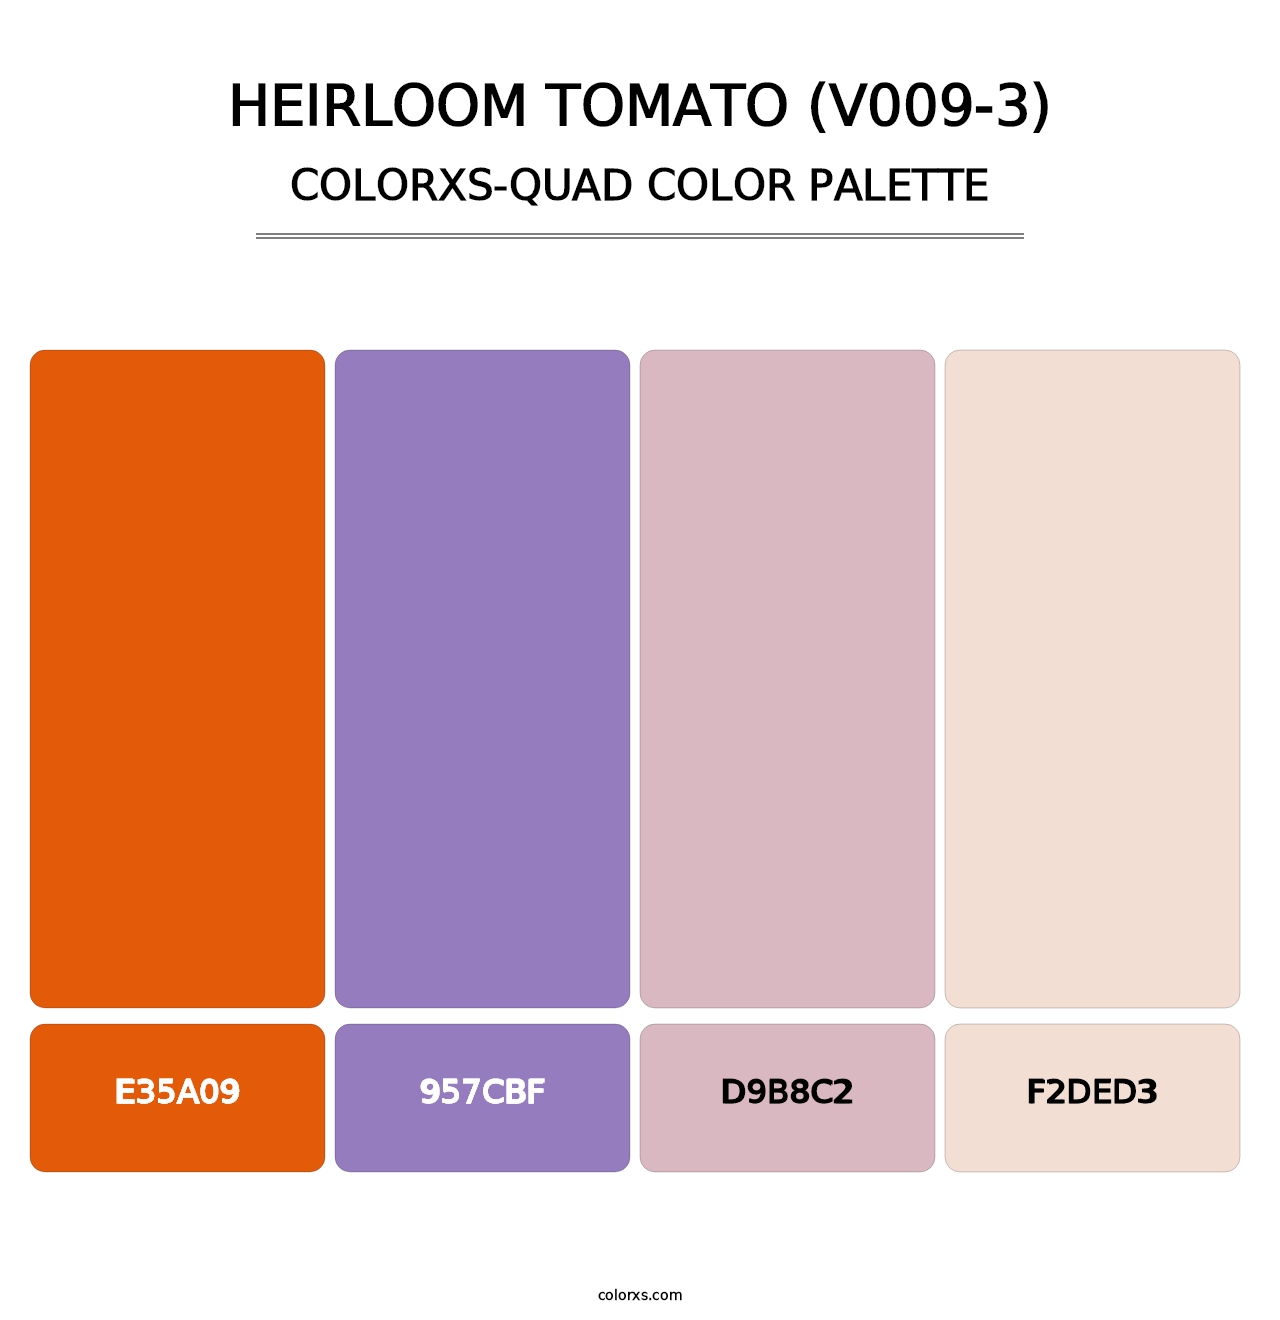 Heirloom Tomato (V009-3) - Colorxs Quad Palette